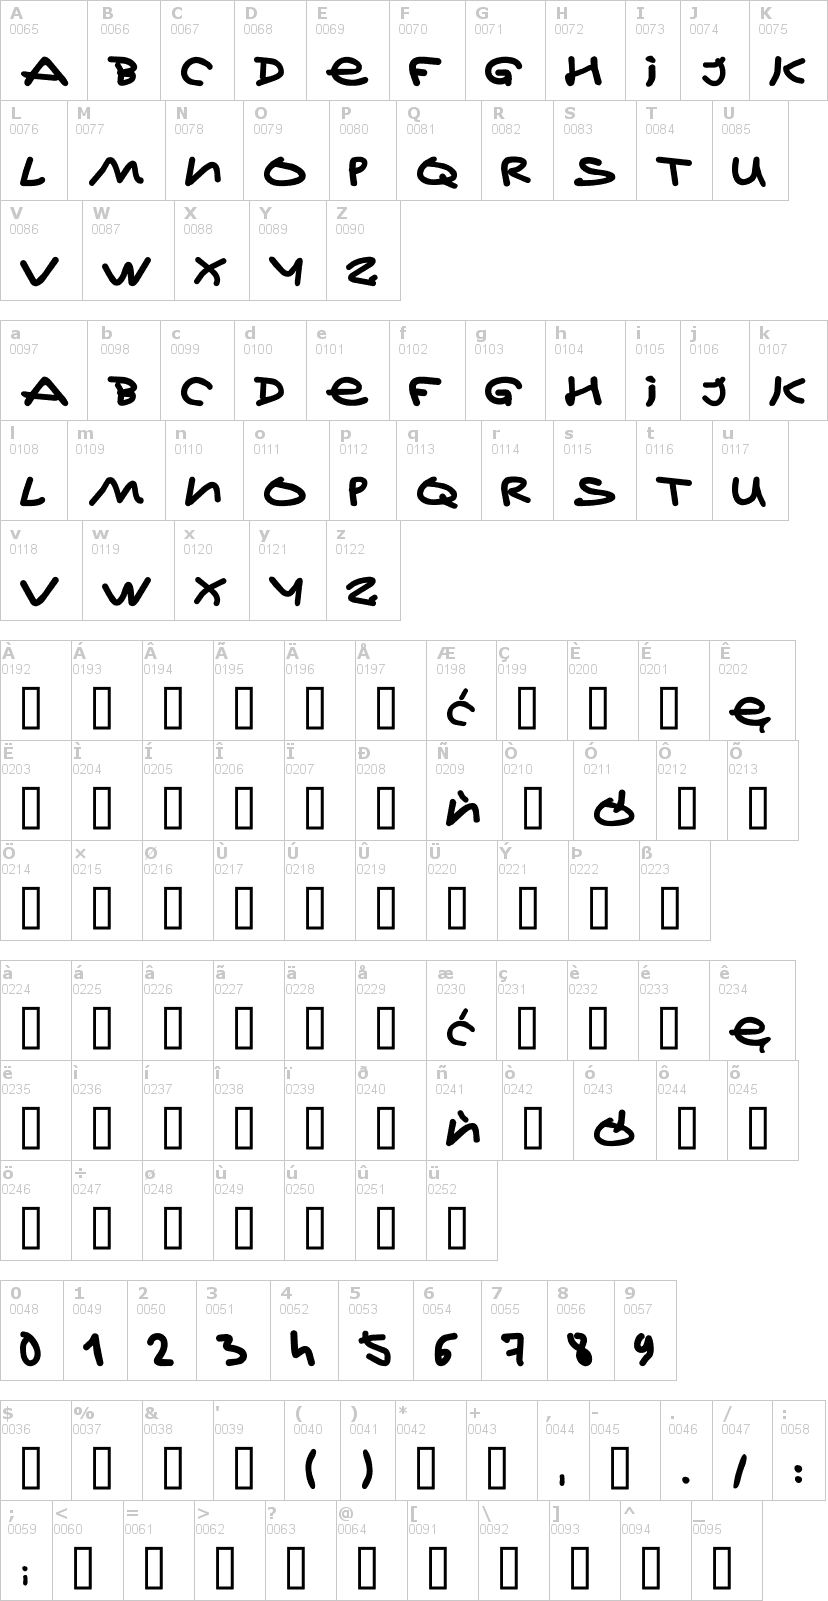 Lettere dell'alfabeto del font jeff-kovalsky con le quali è possibile realizzare adesivi prespaziati